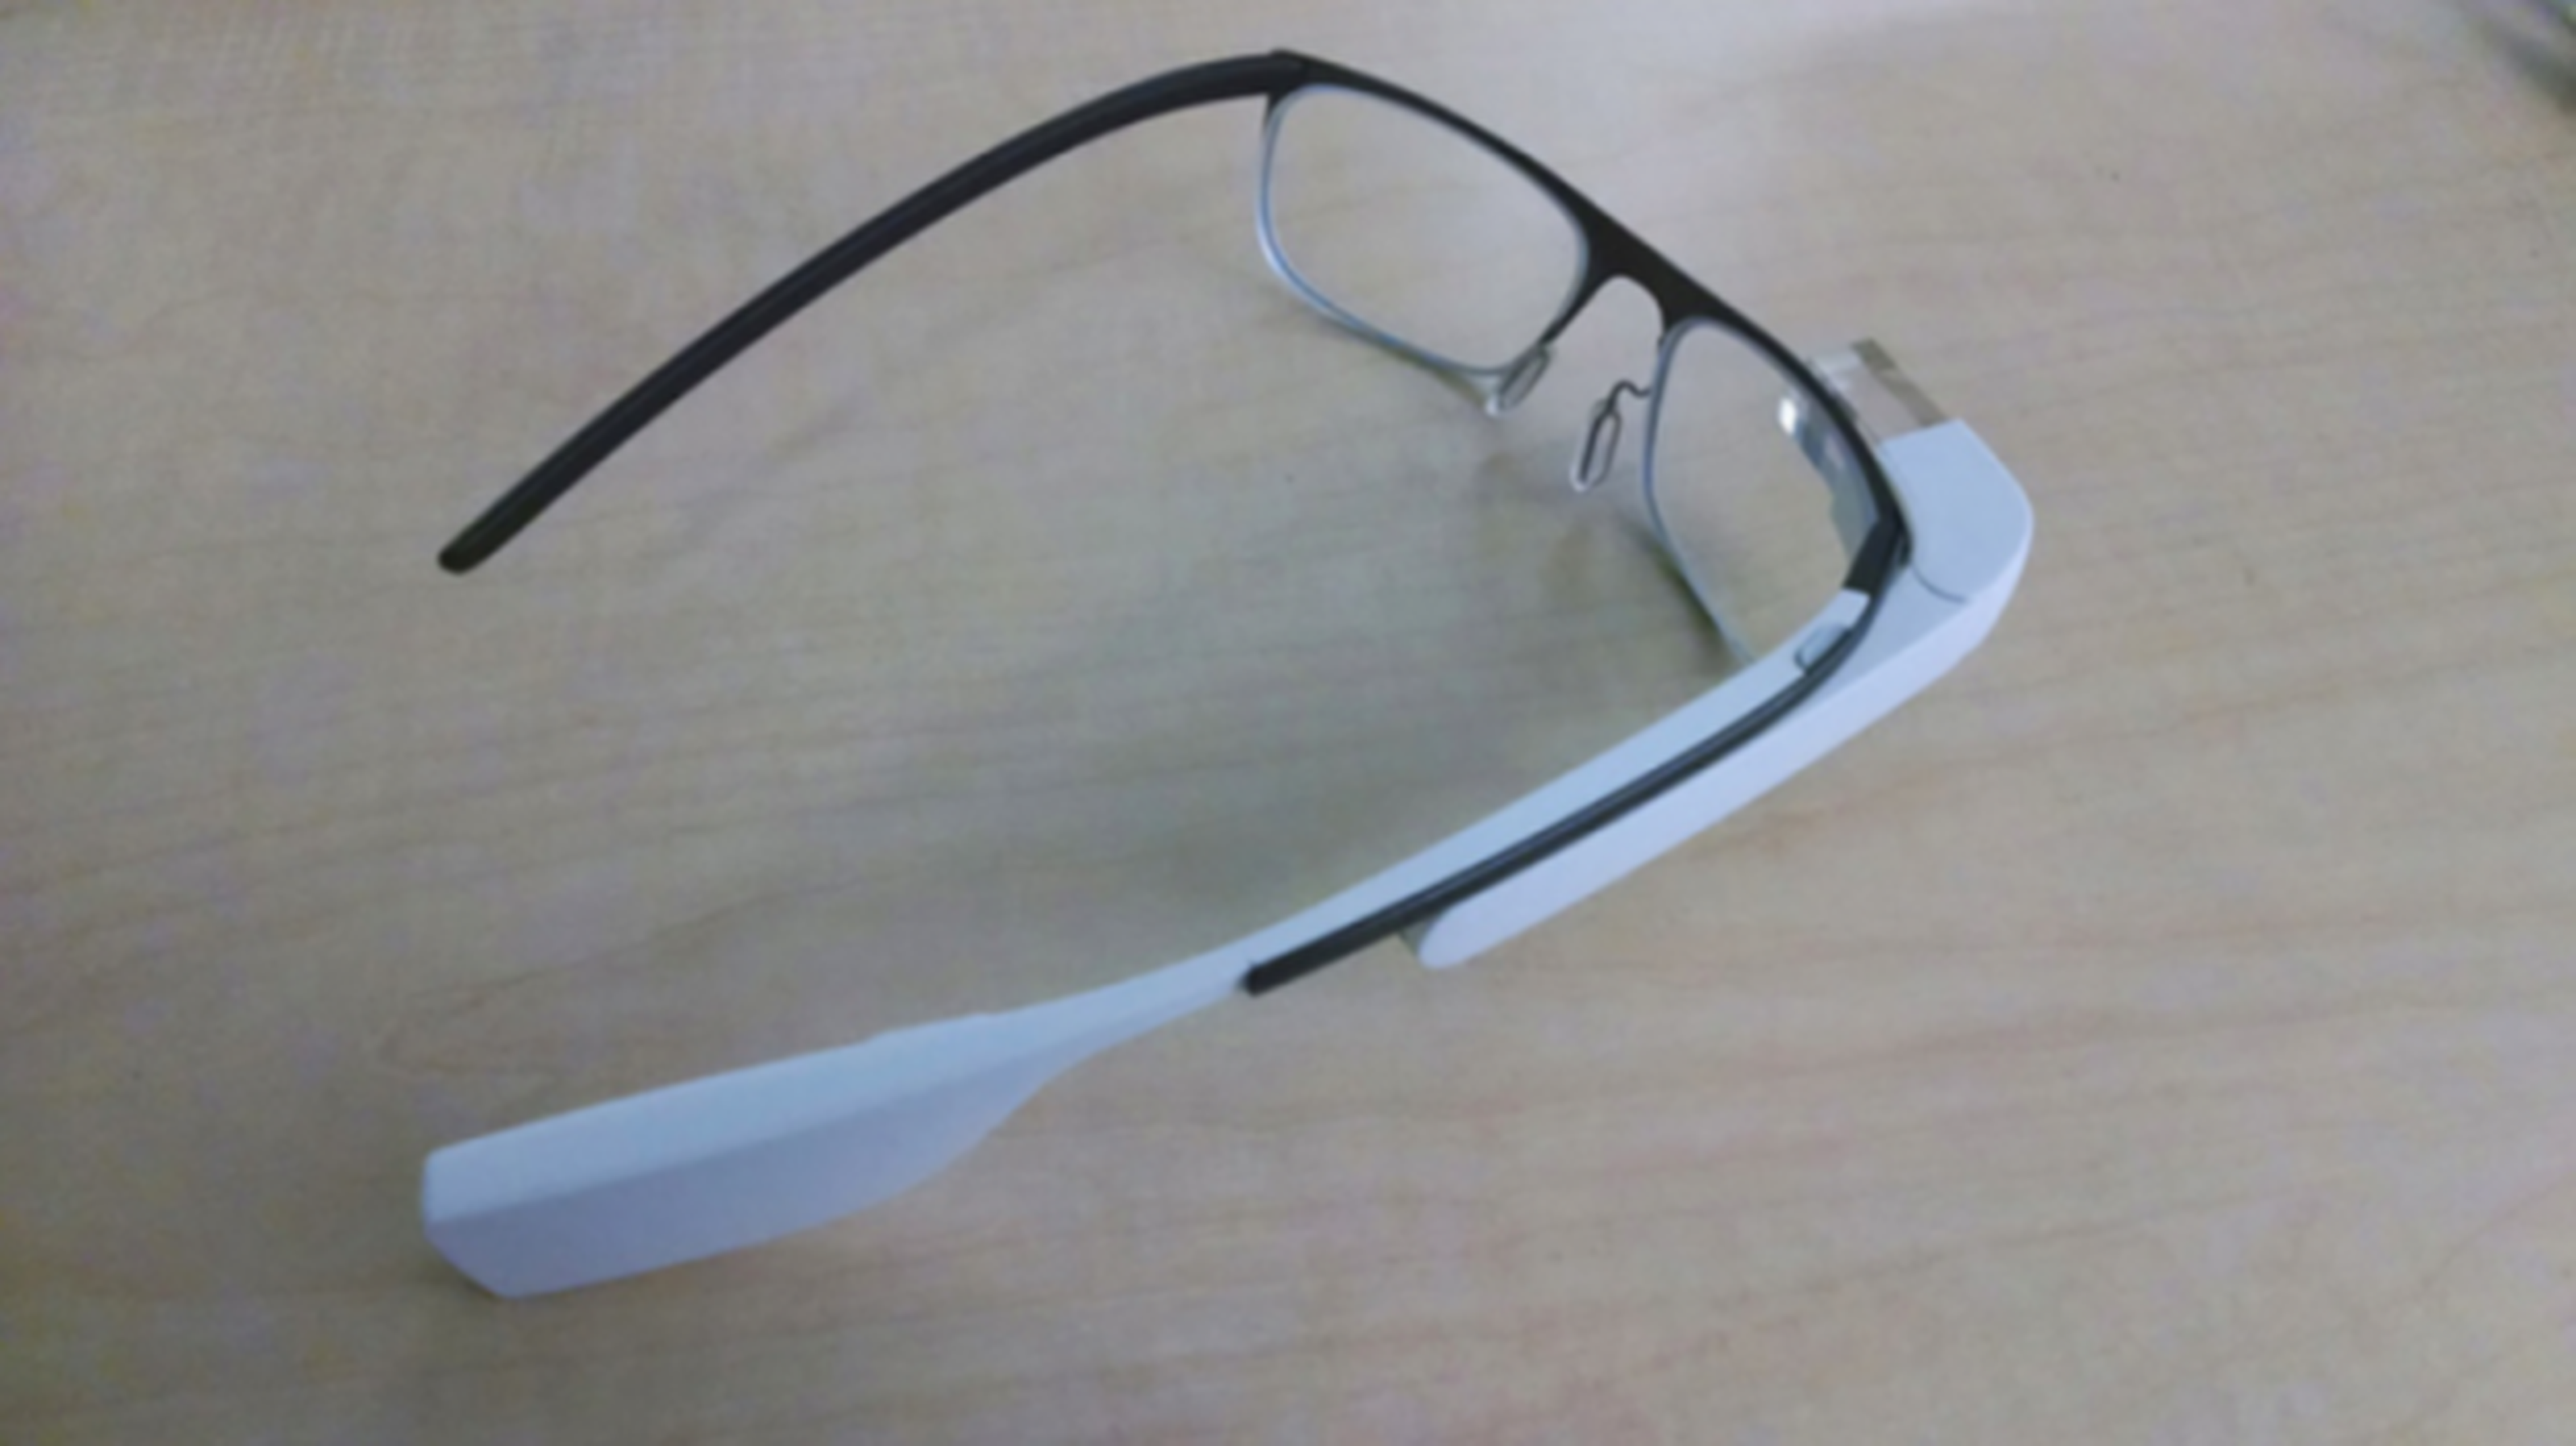 Imagen prototipo Google Glass de prescripción